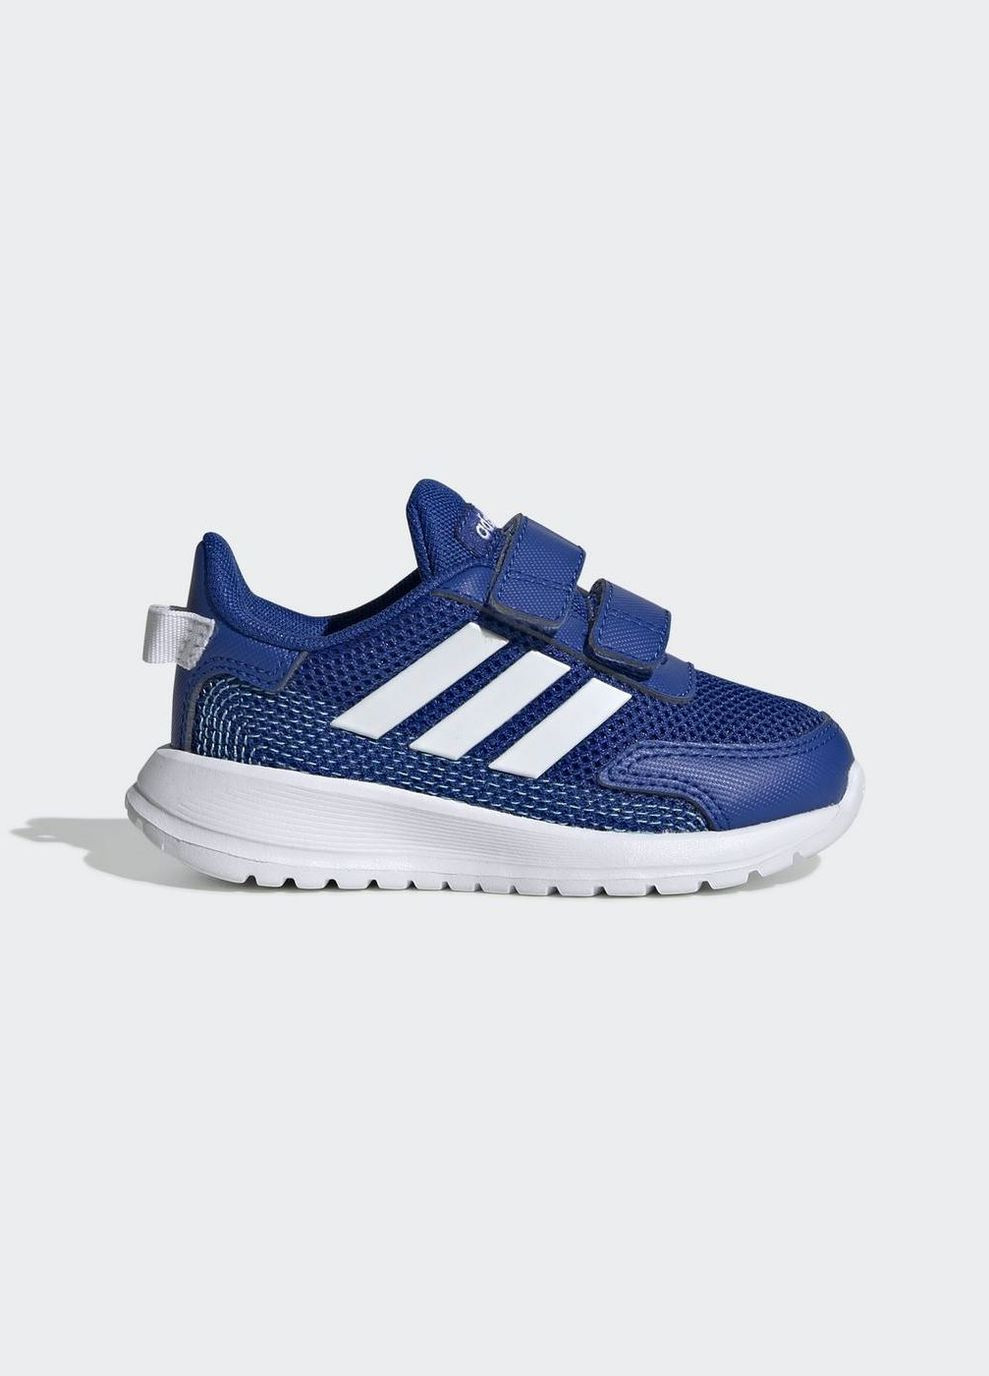 Синие всесезонные детские кроссовки tensaur run i eg4140 adidas